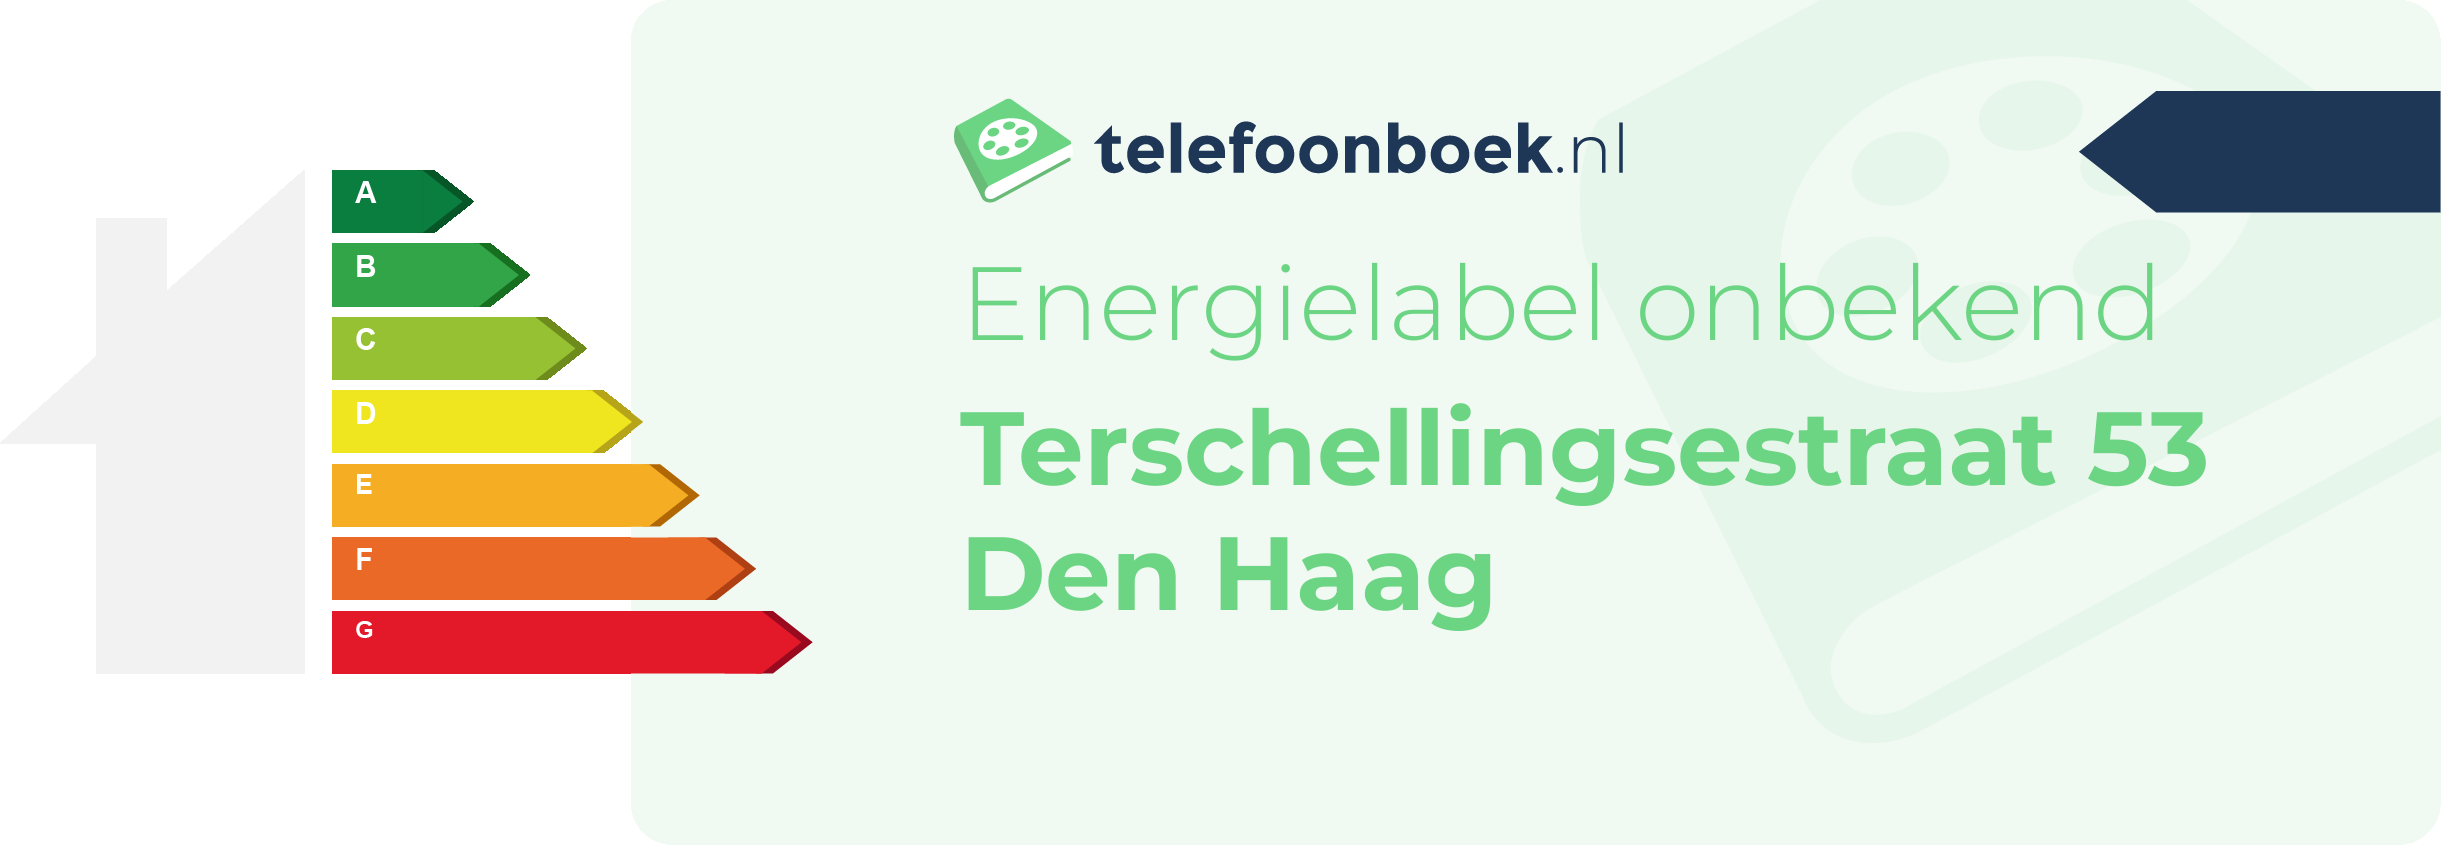 Energielabel Terschellingsestraat 53 Den Haag